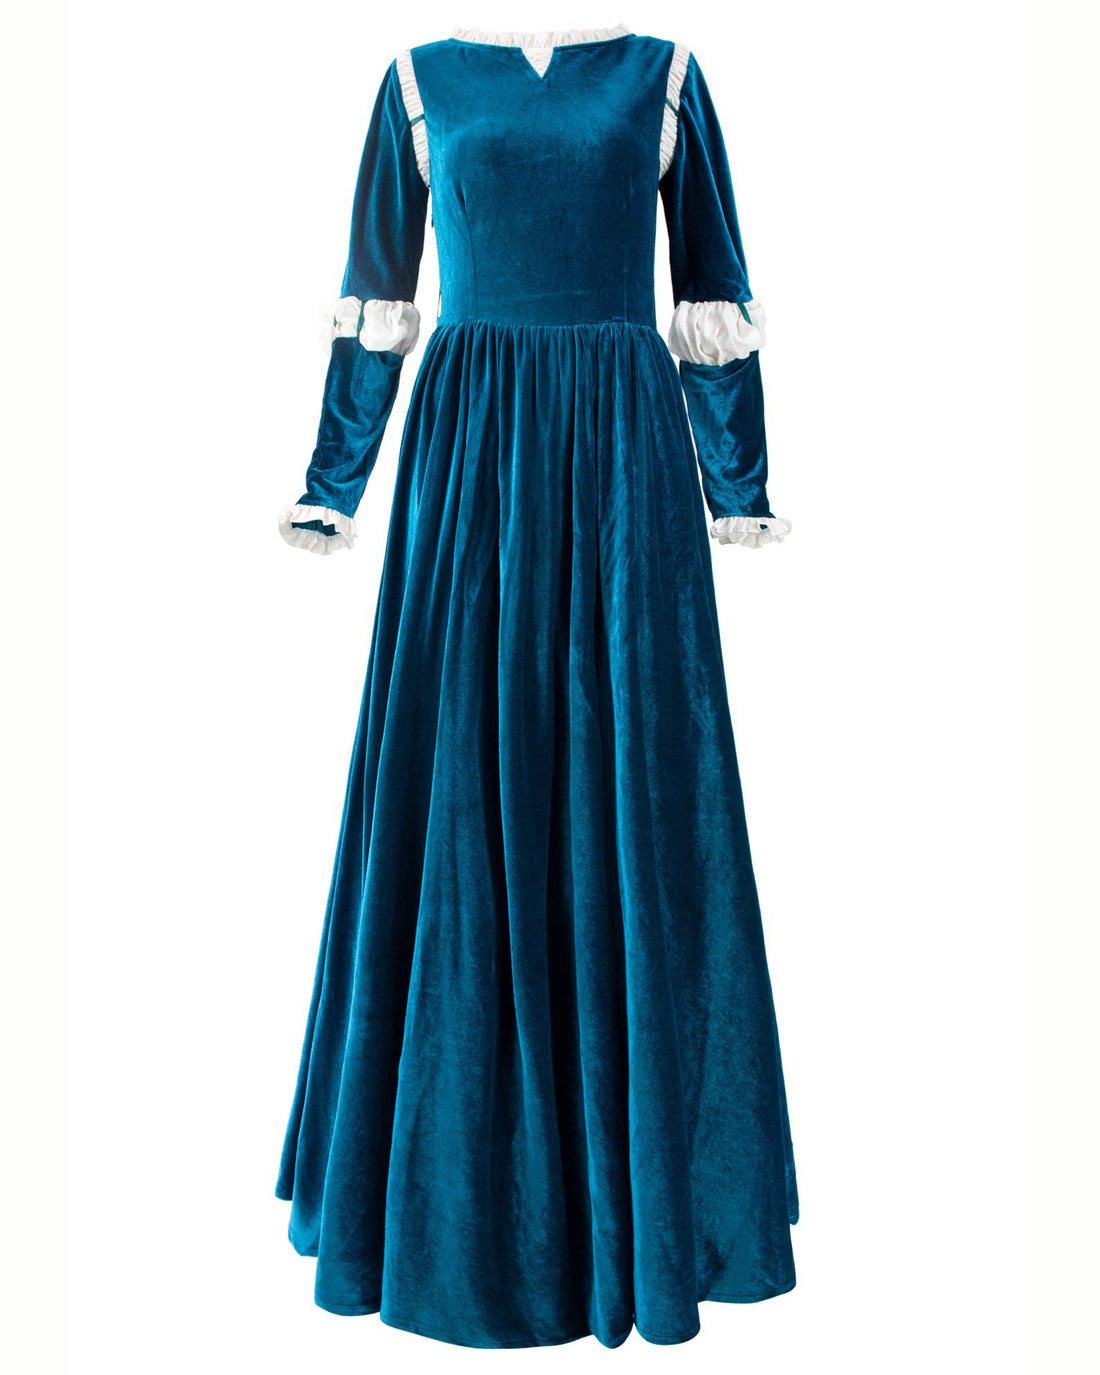 Brave Princess コスプレ衣装 ルネサンス中世ドレス 矢筒付き